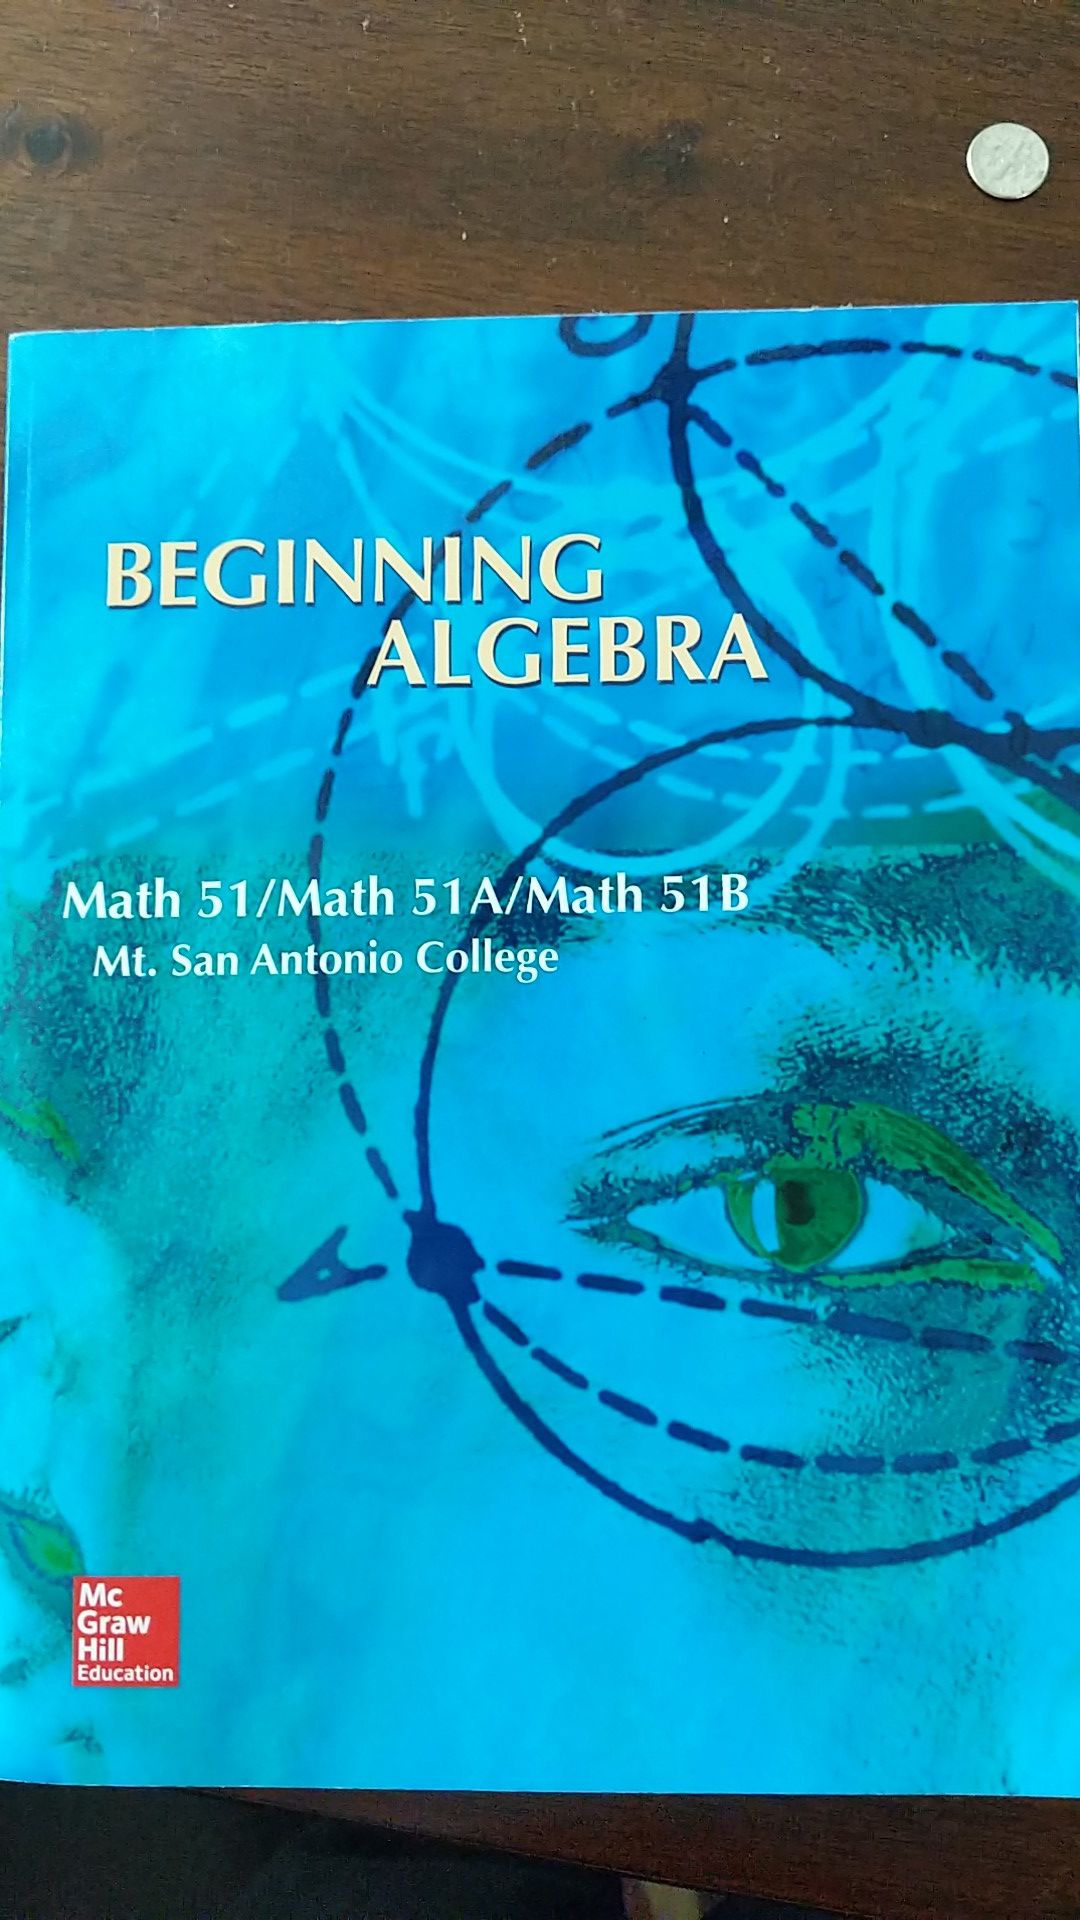 Beginning Algebra Mt. Sac edition for Math 51/51A/51B